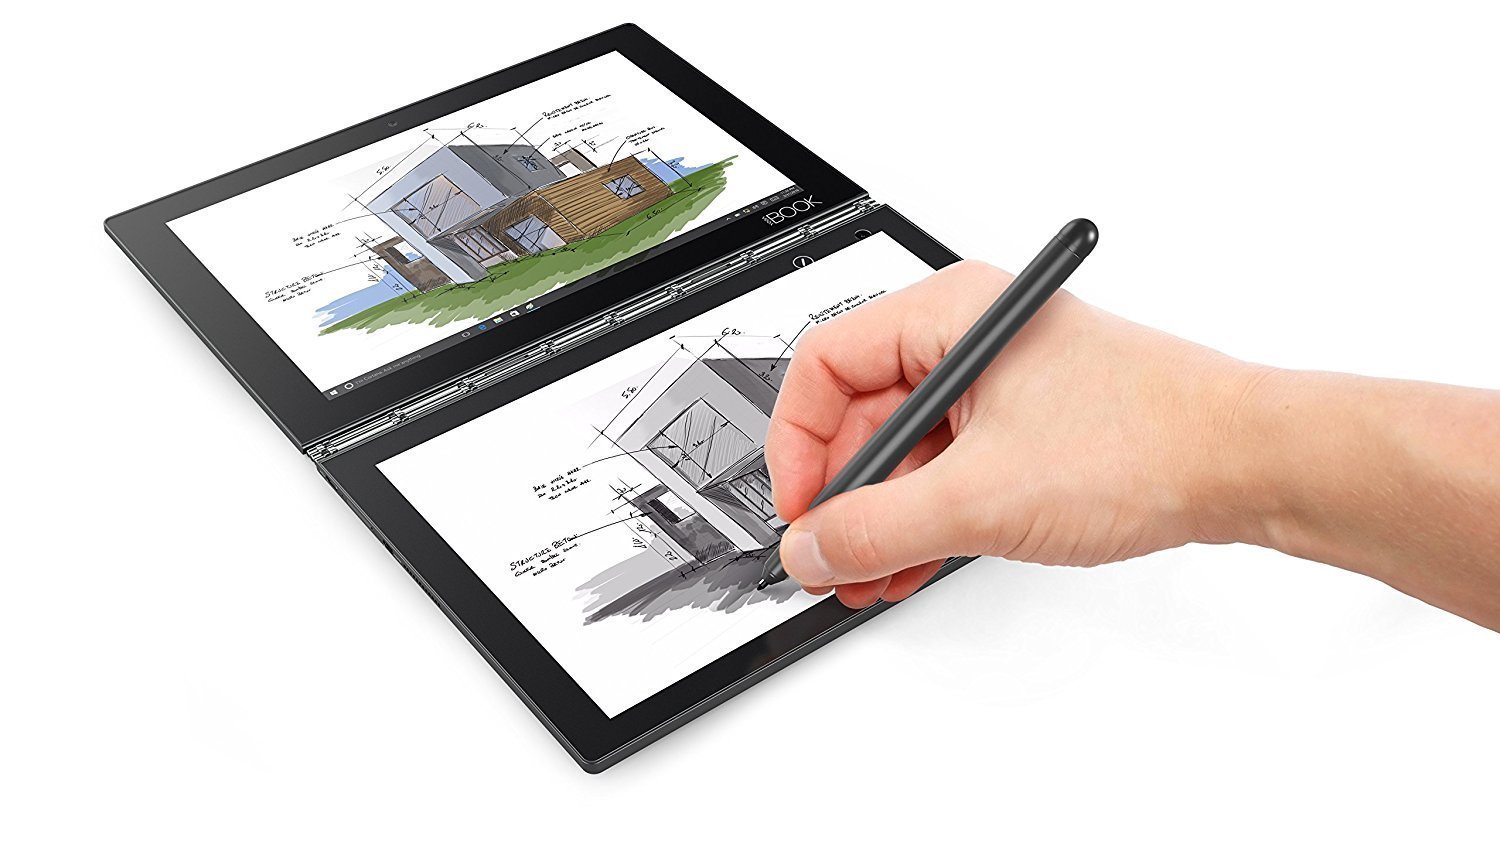 https://assodigitale.it/wp-content/uploads/2018/03/Come-scegliere-ed-acquistare-il-migliore-tablet-per-disegnare-a-mano-libera-o-con-pennino.jpg